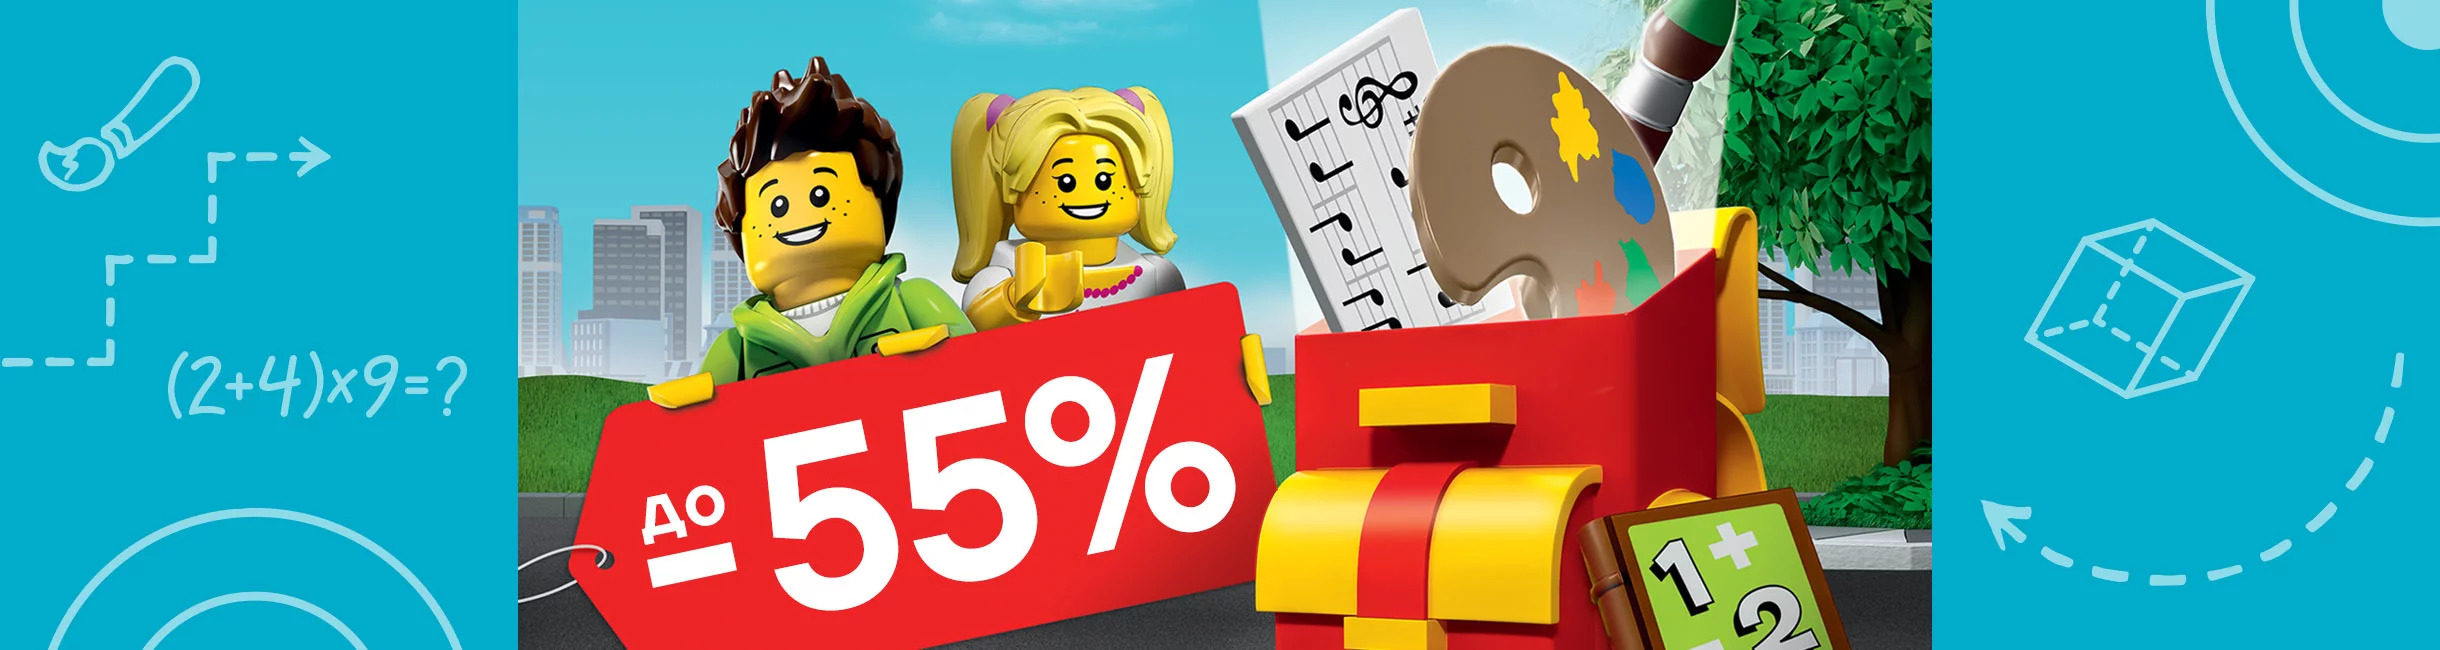 Рекламная акция Лего (LEGO) «Со скидками до 55% в школу веселей!»